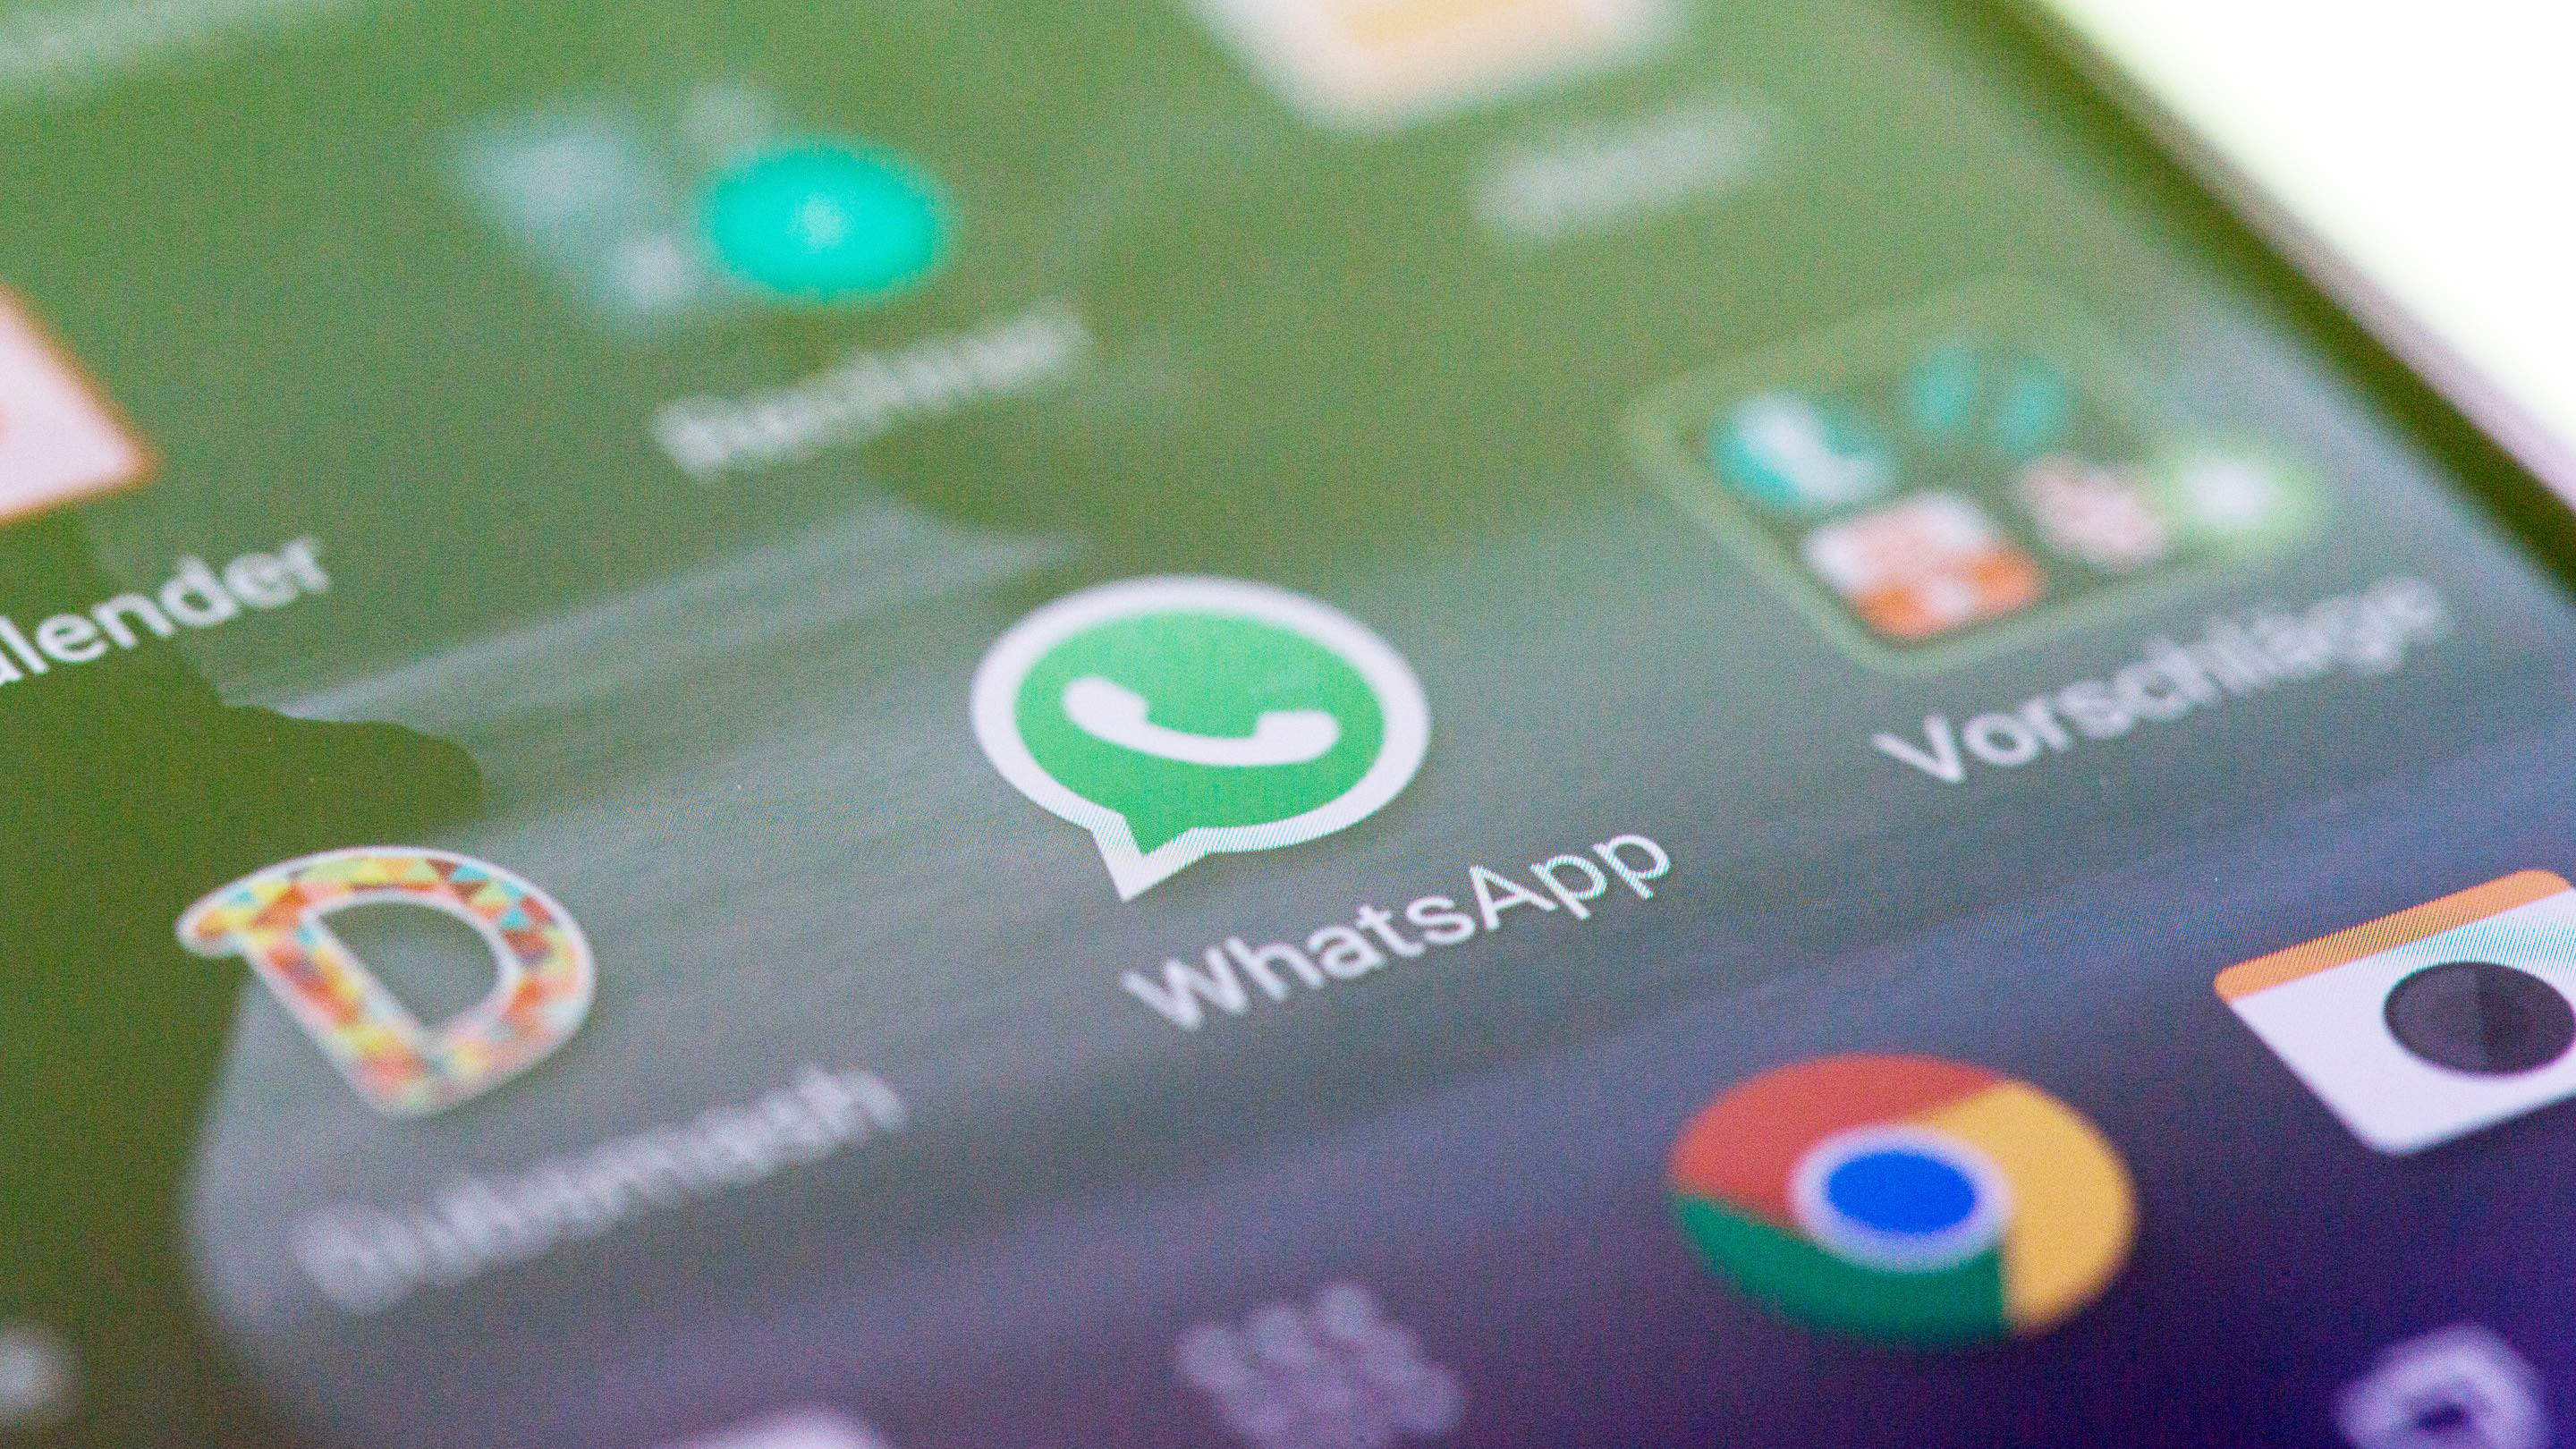 WhatsApp pondrá publicidad en sus estados a partir de 2019